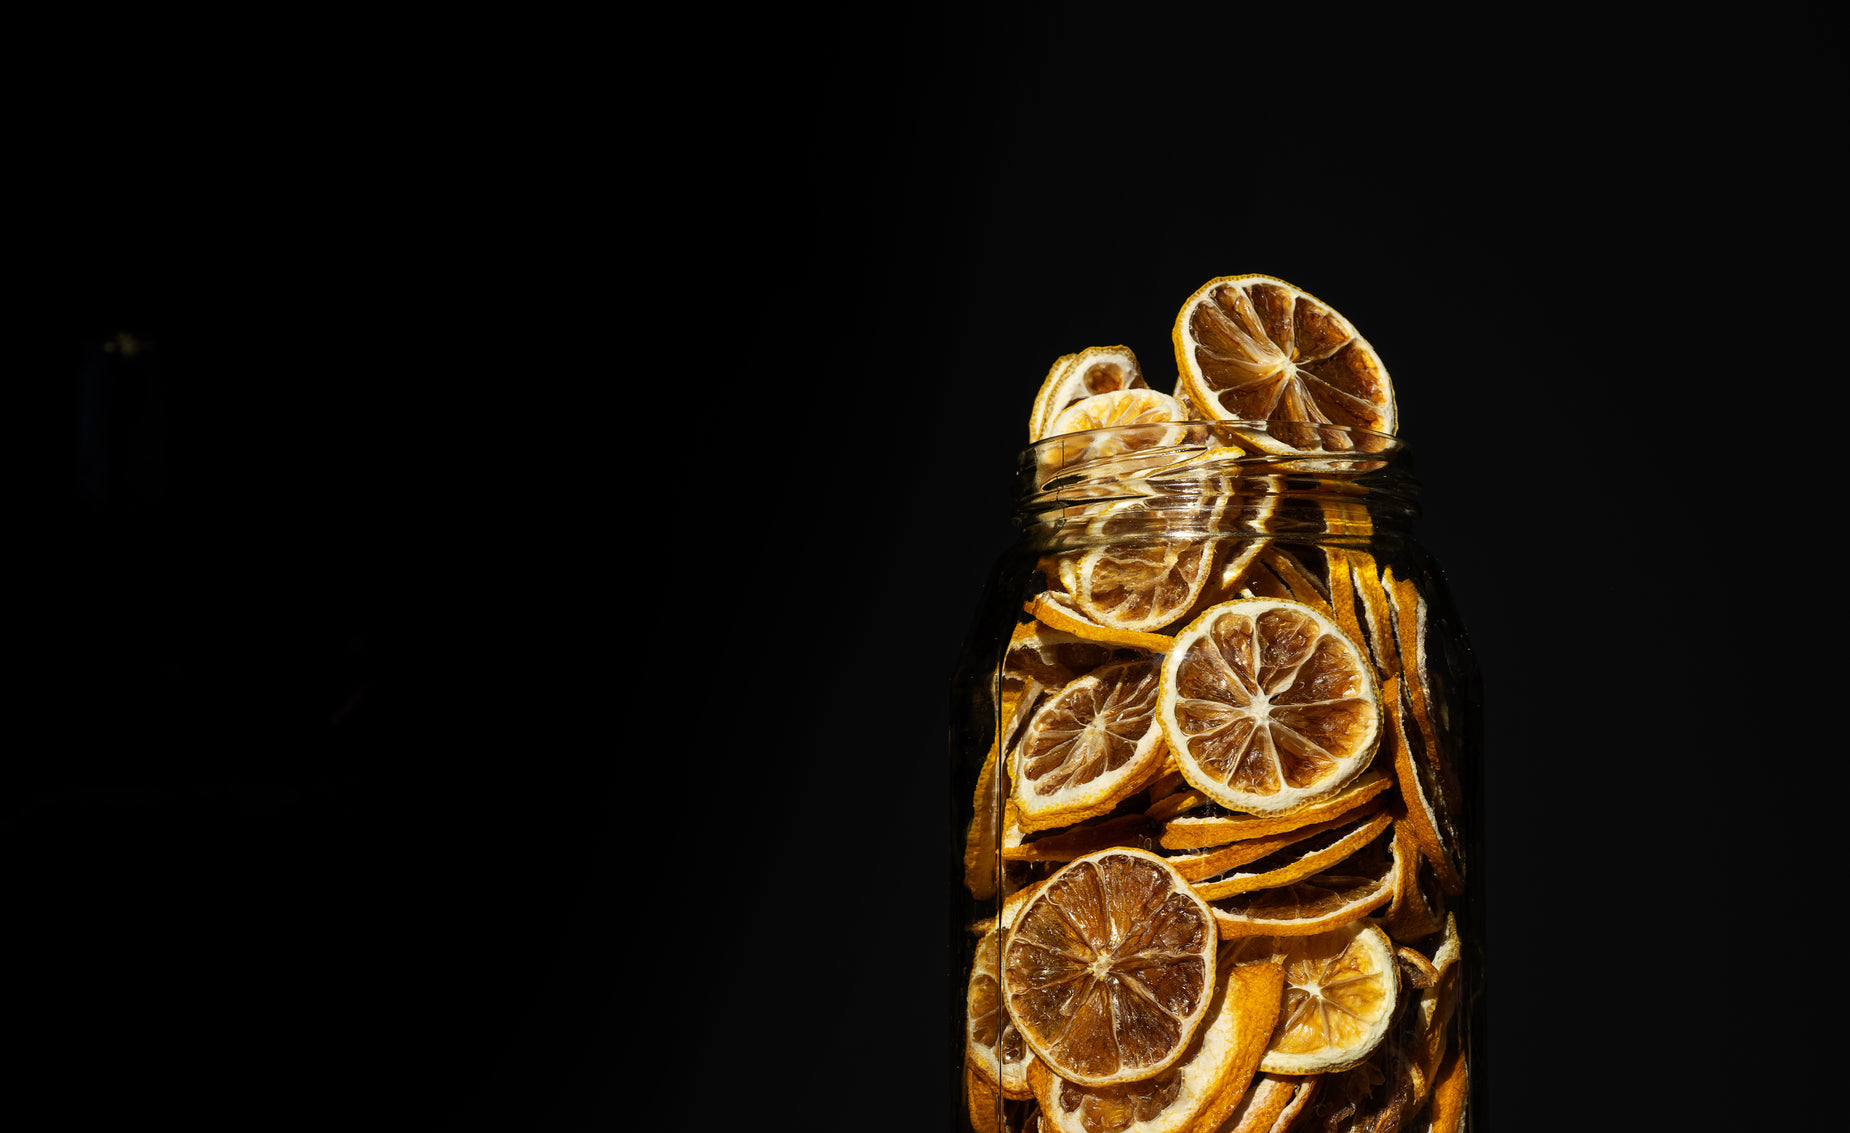 a jar full of sliced oranges with some lemons